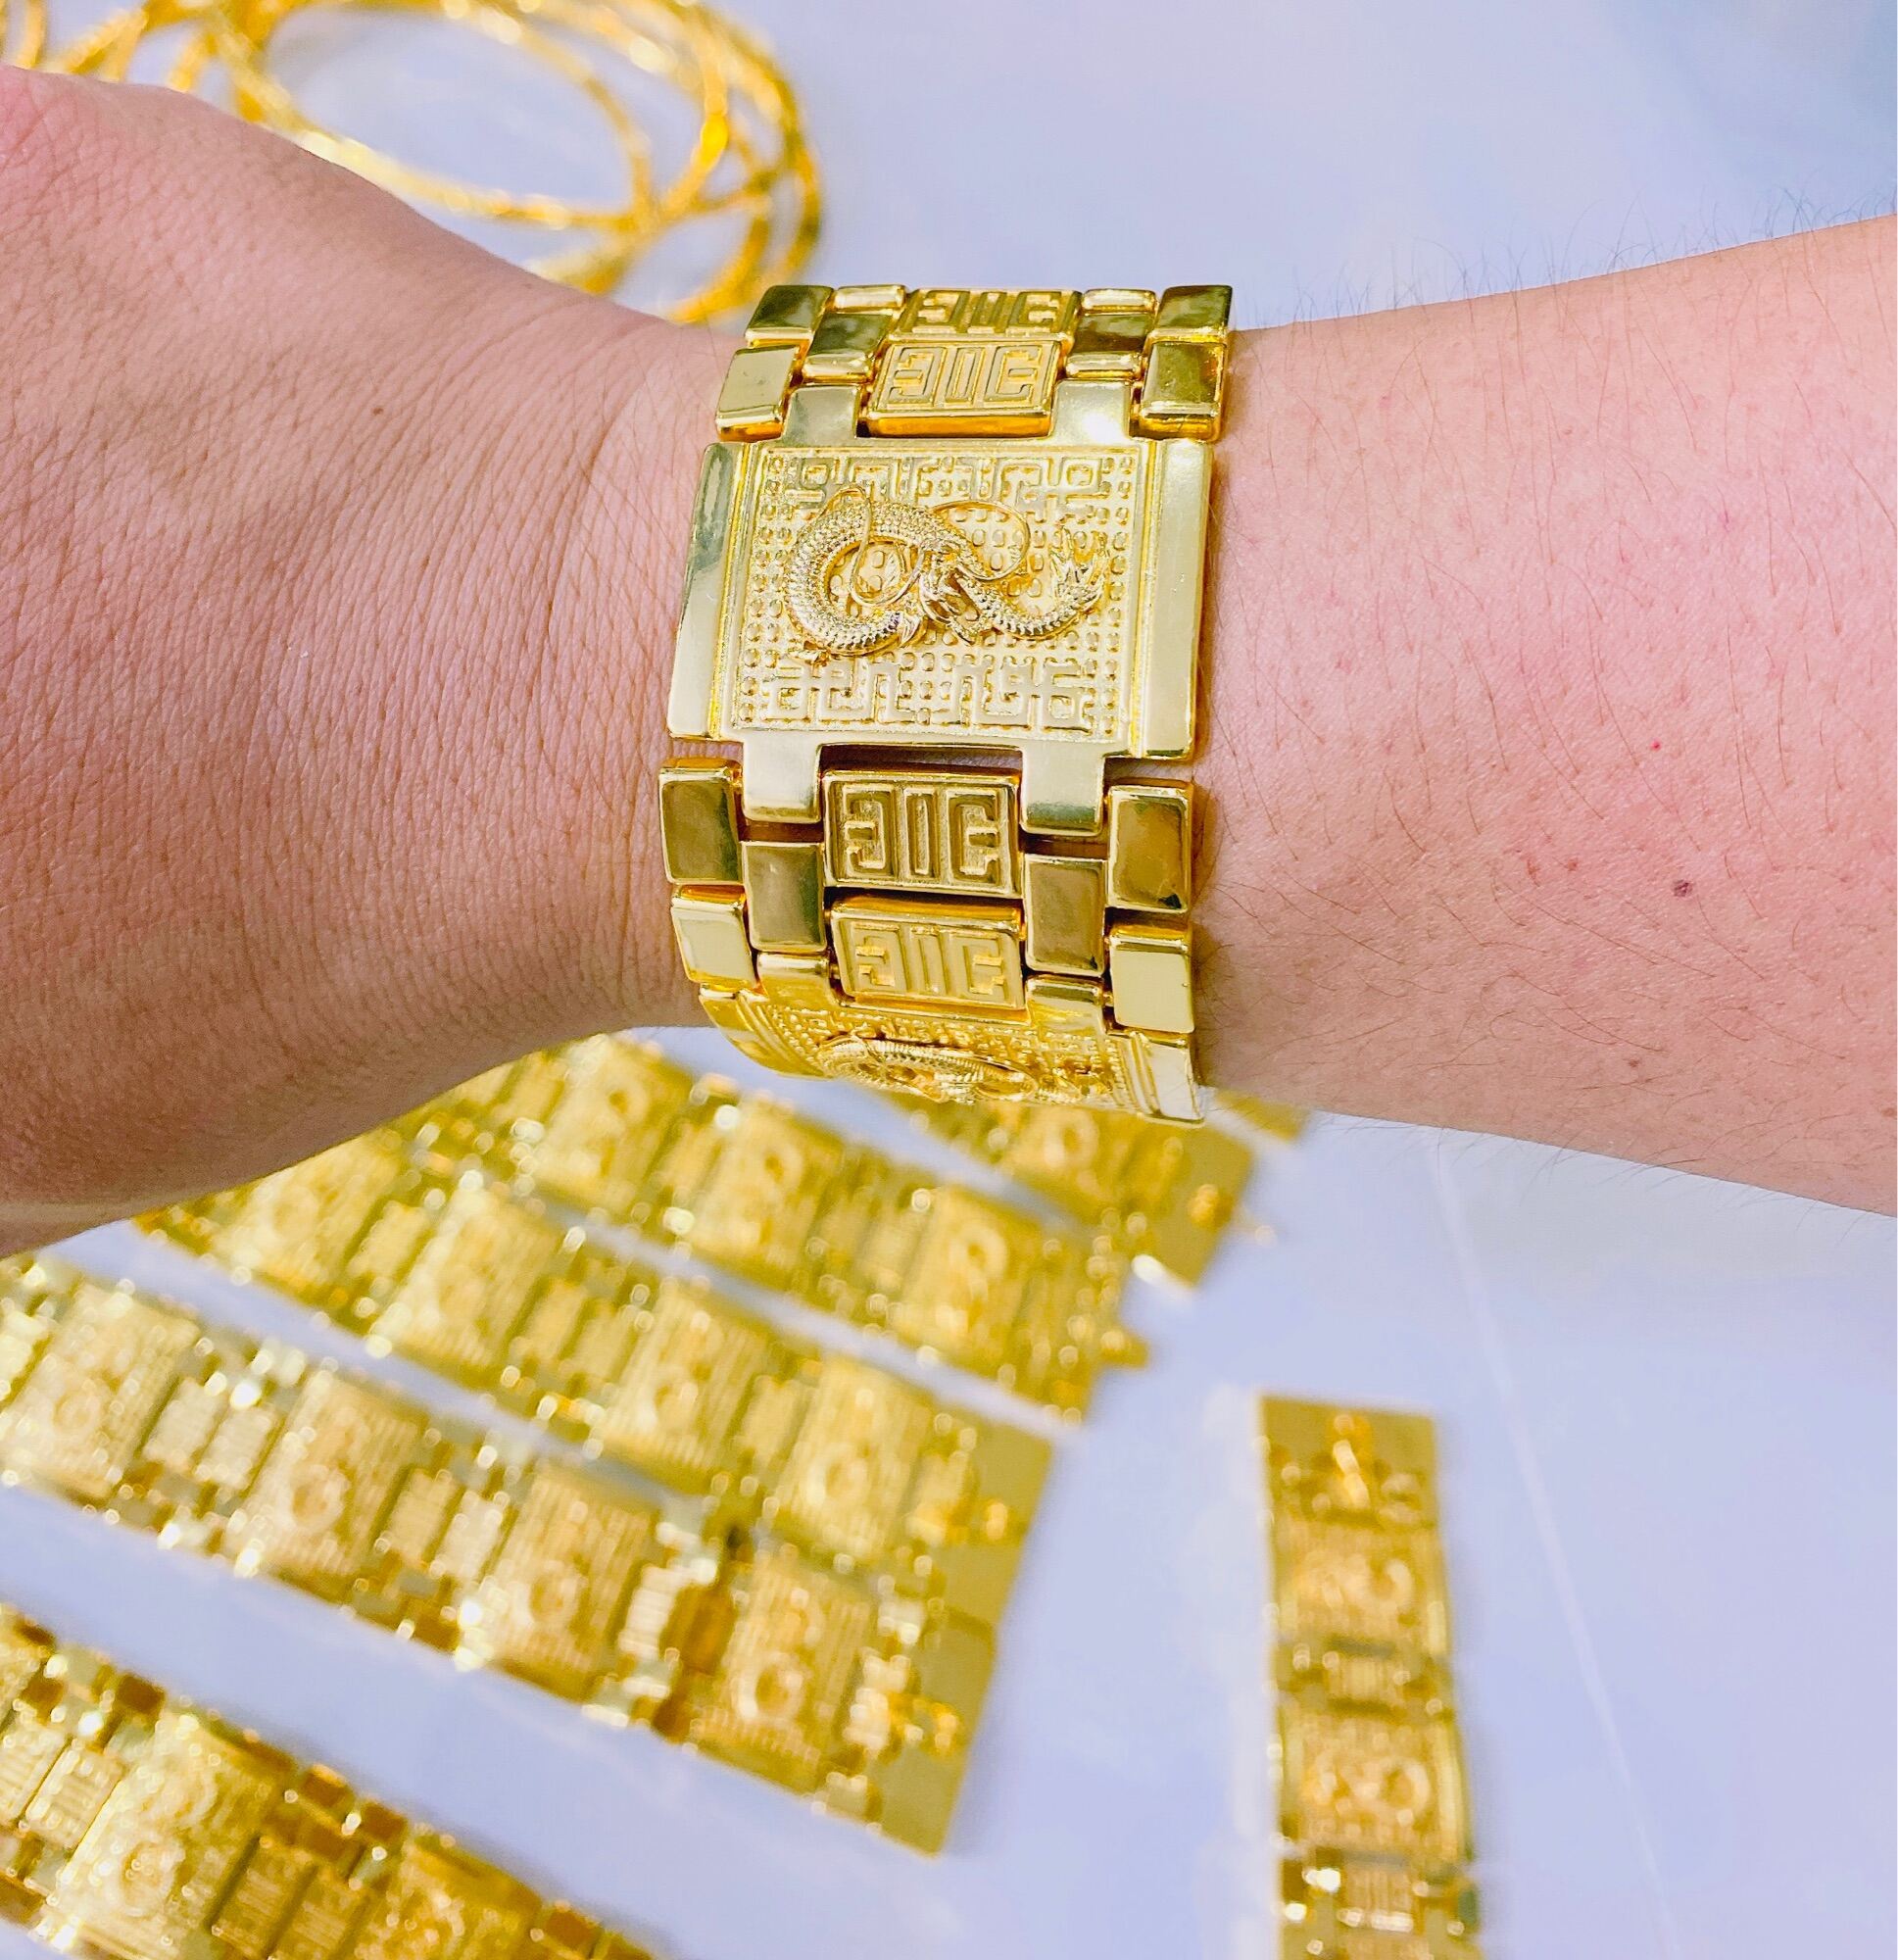 Lắc tay nam rồng mạ vàng 24k với hình ảnh rồng phượng biểu tượng của sức mạnh và may mắn. Thiết kế tinh tế và sáng tạo với chất liệu vàng 24k quý giá giúp tôn lên đẳng cấp và phong cách cho người sử dụng.